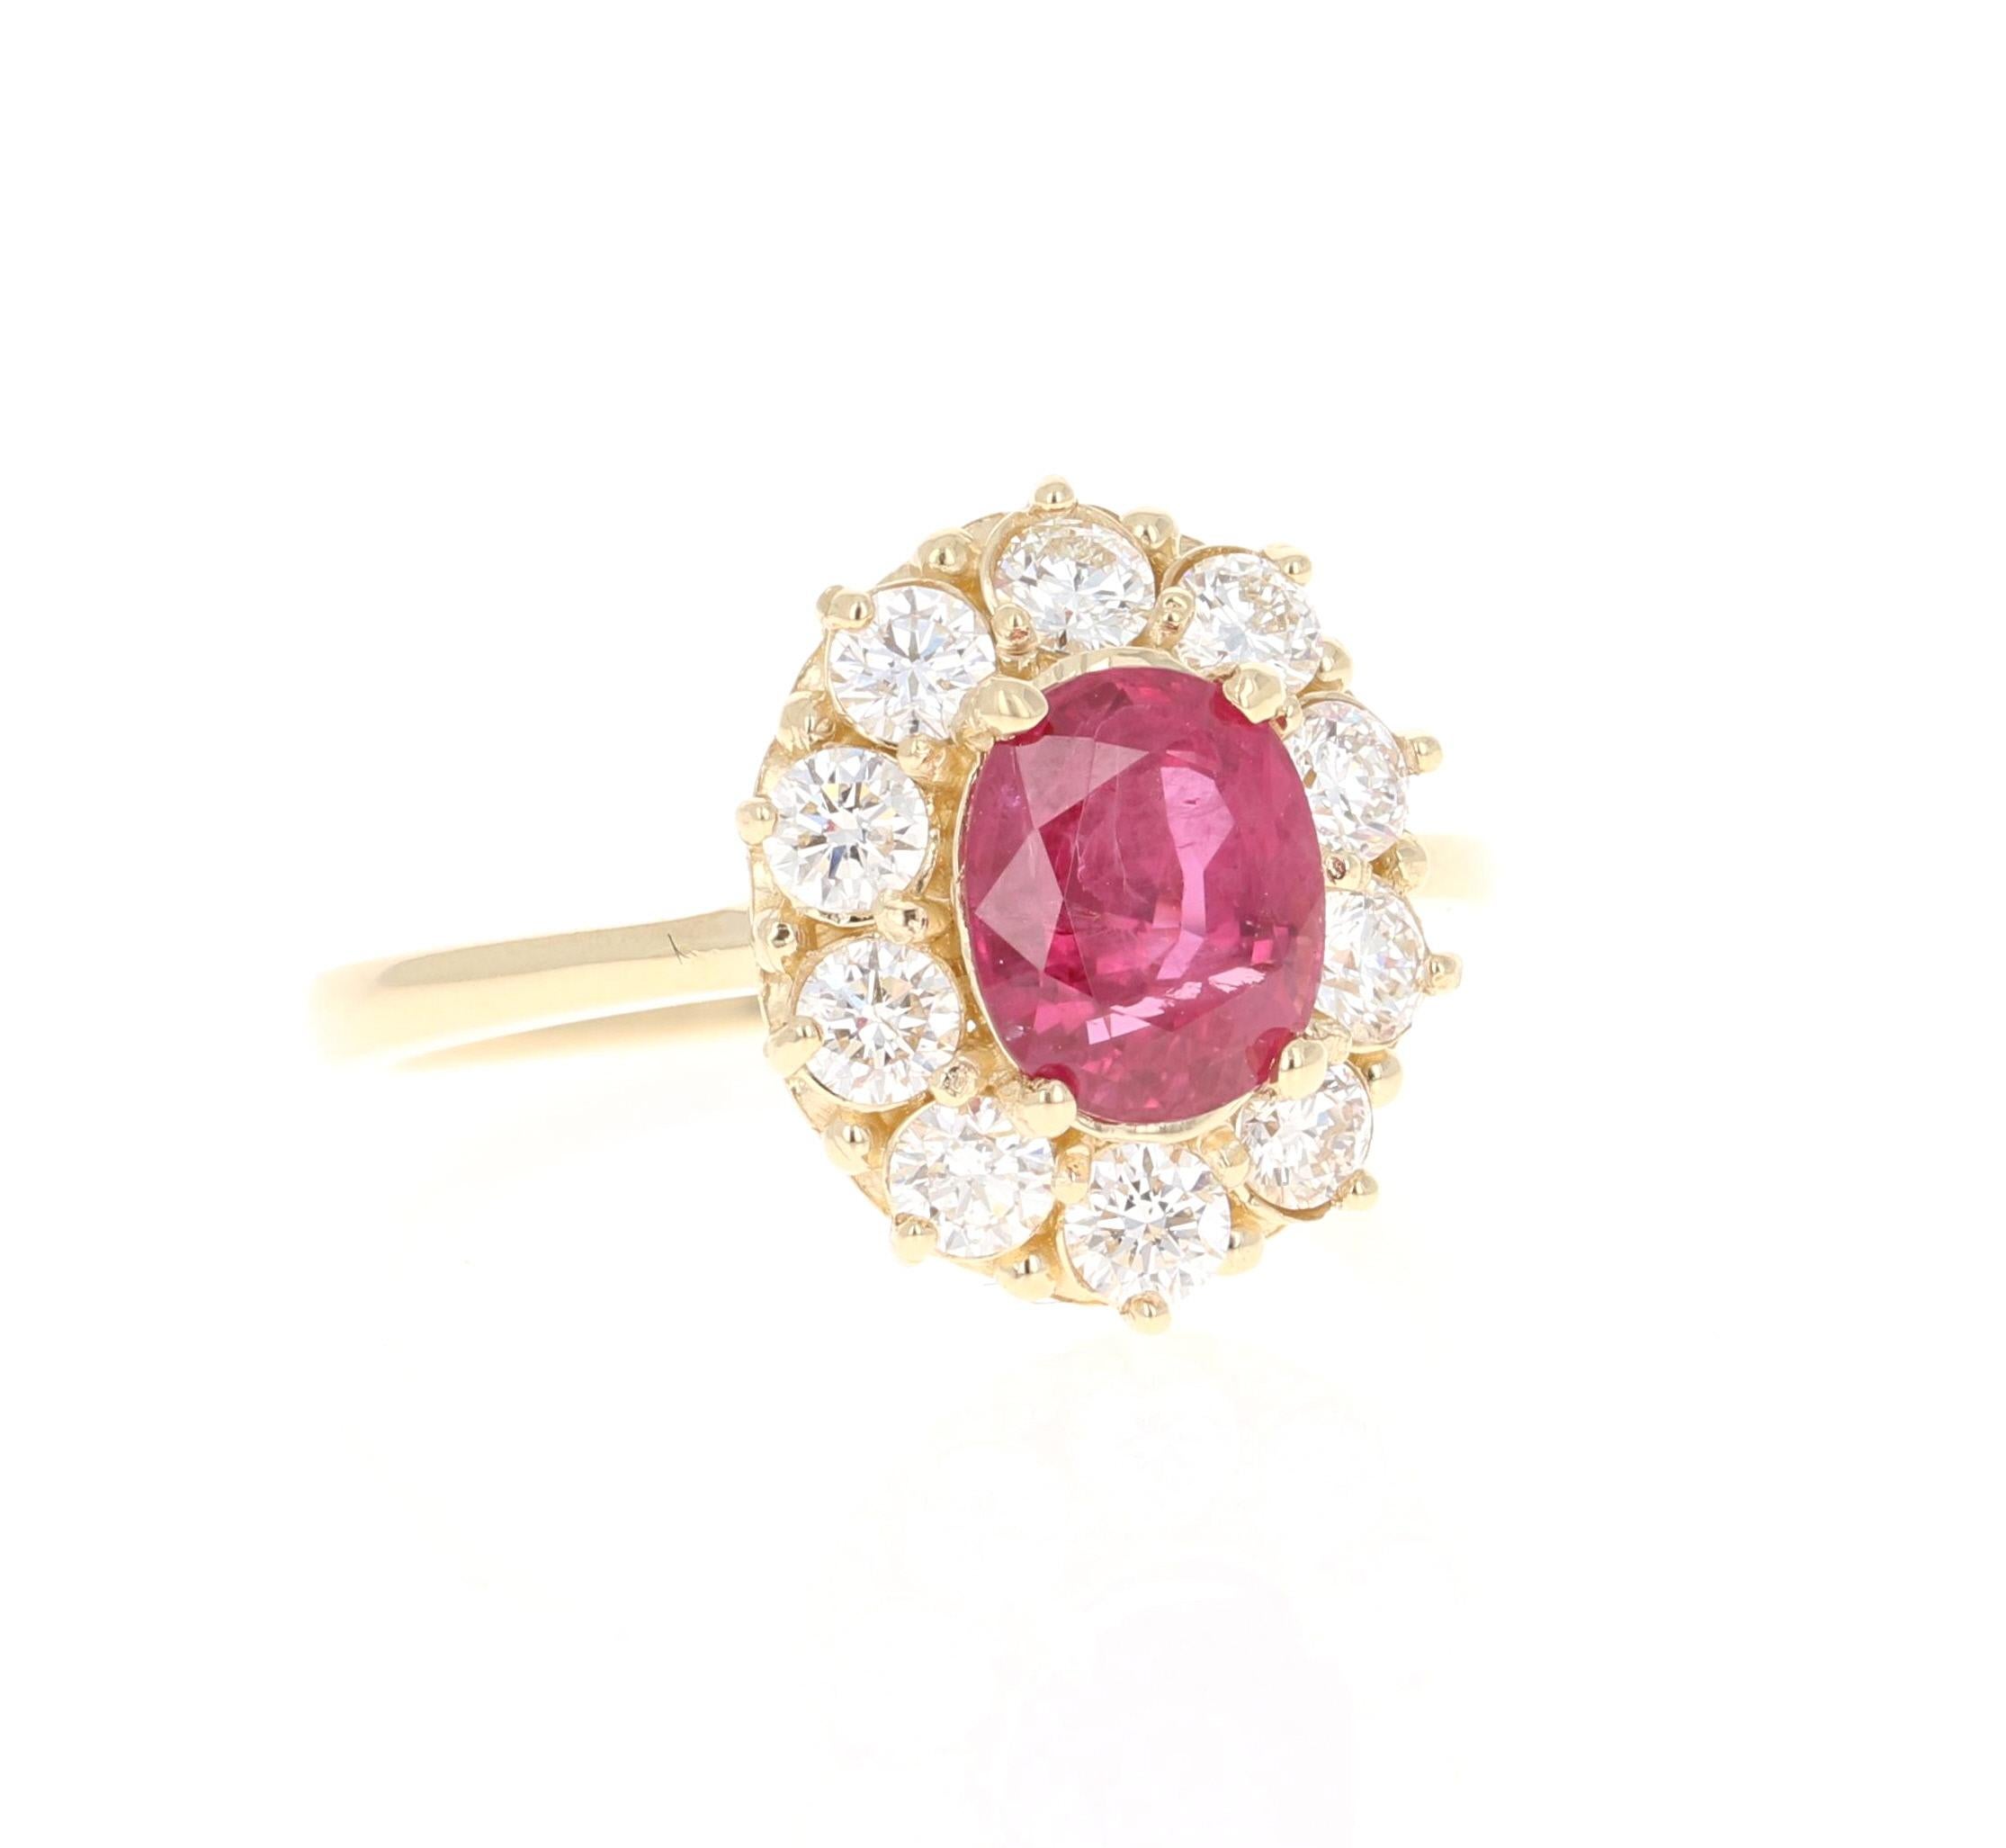 Schöner Ballerina-Rubin-Diamant-Ring mit einem natürlichen Rubin im Ovalschliff von 1,66 Karat, der von 10 Diamanten im Rundschliff mit einem Gewicht von 0,81 Karat umgeben ist. Das Gesamtkaratgewicht des Rings beträgt 2,47 Karat. Die Reinheit und